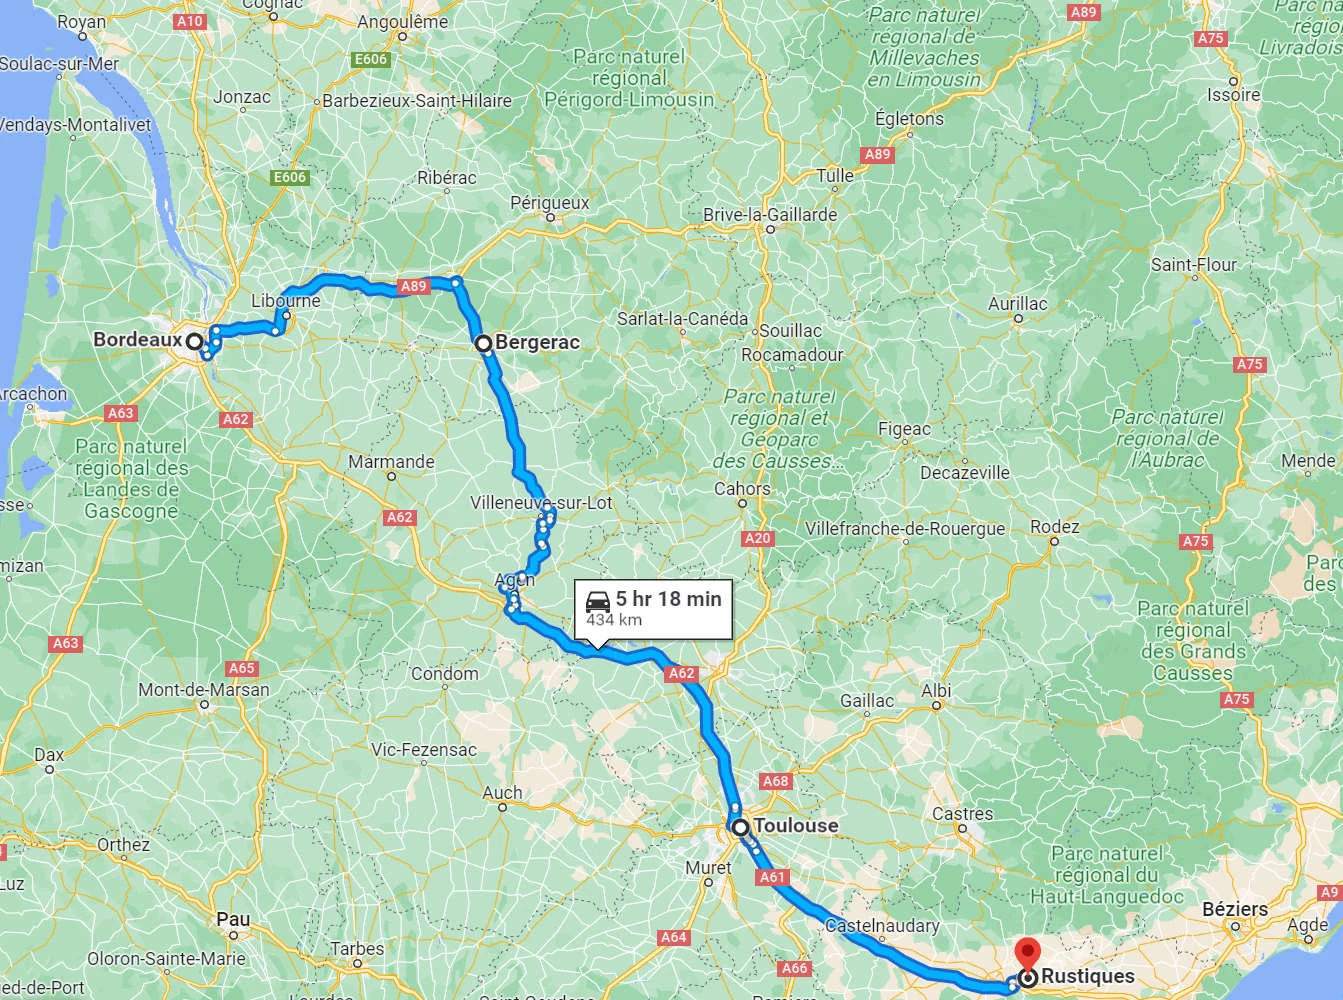 France to Germany Road Trip - Paris, Bordeaux, Carcassonne & Munich